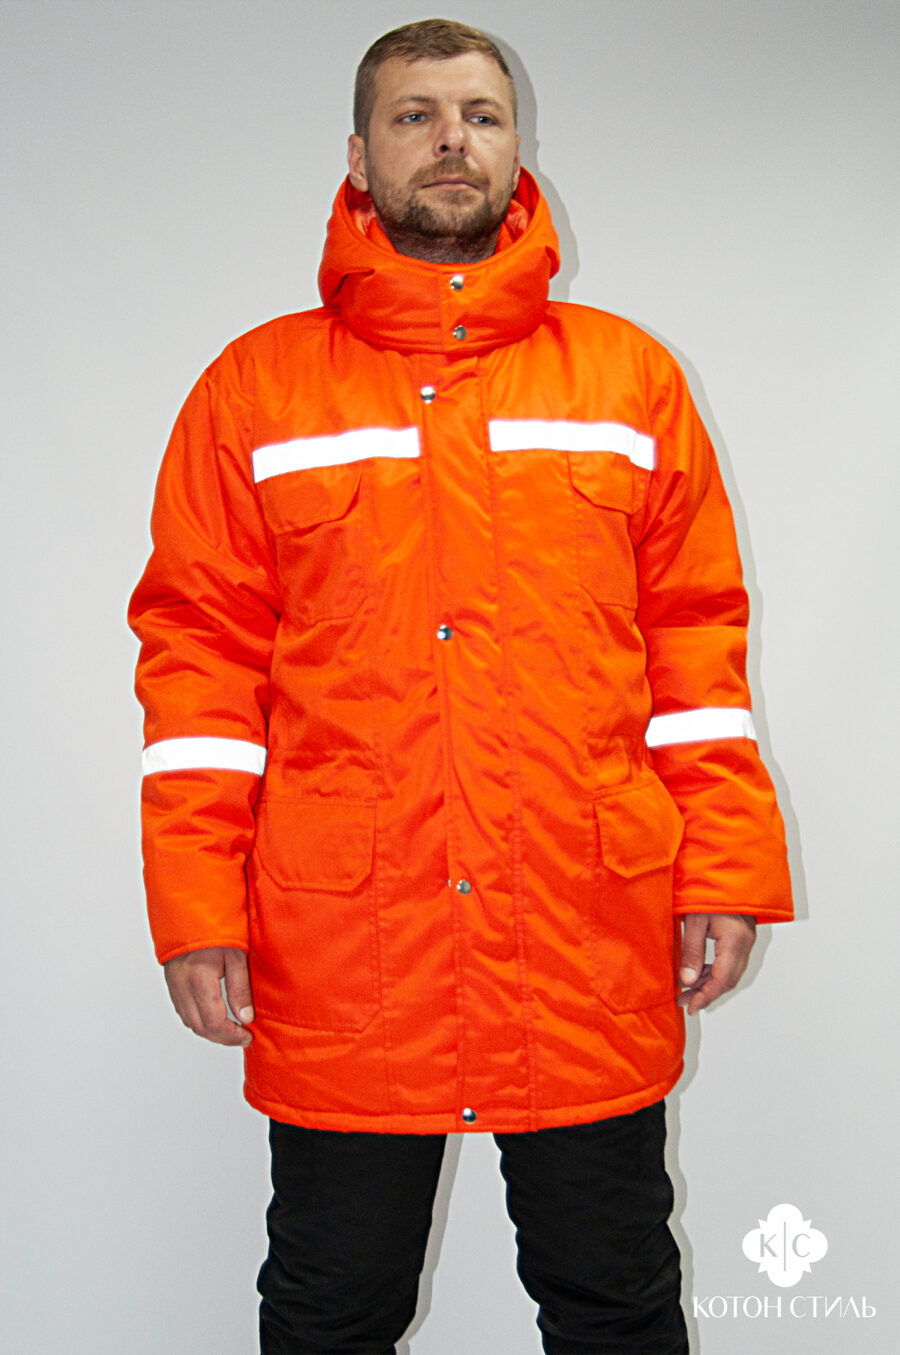 Універсальна зимова куртка для дорожників, лісівників, мисливців і працівників СТО